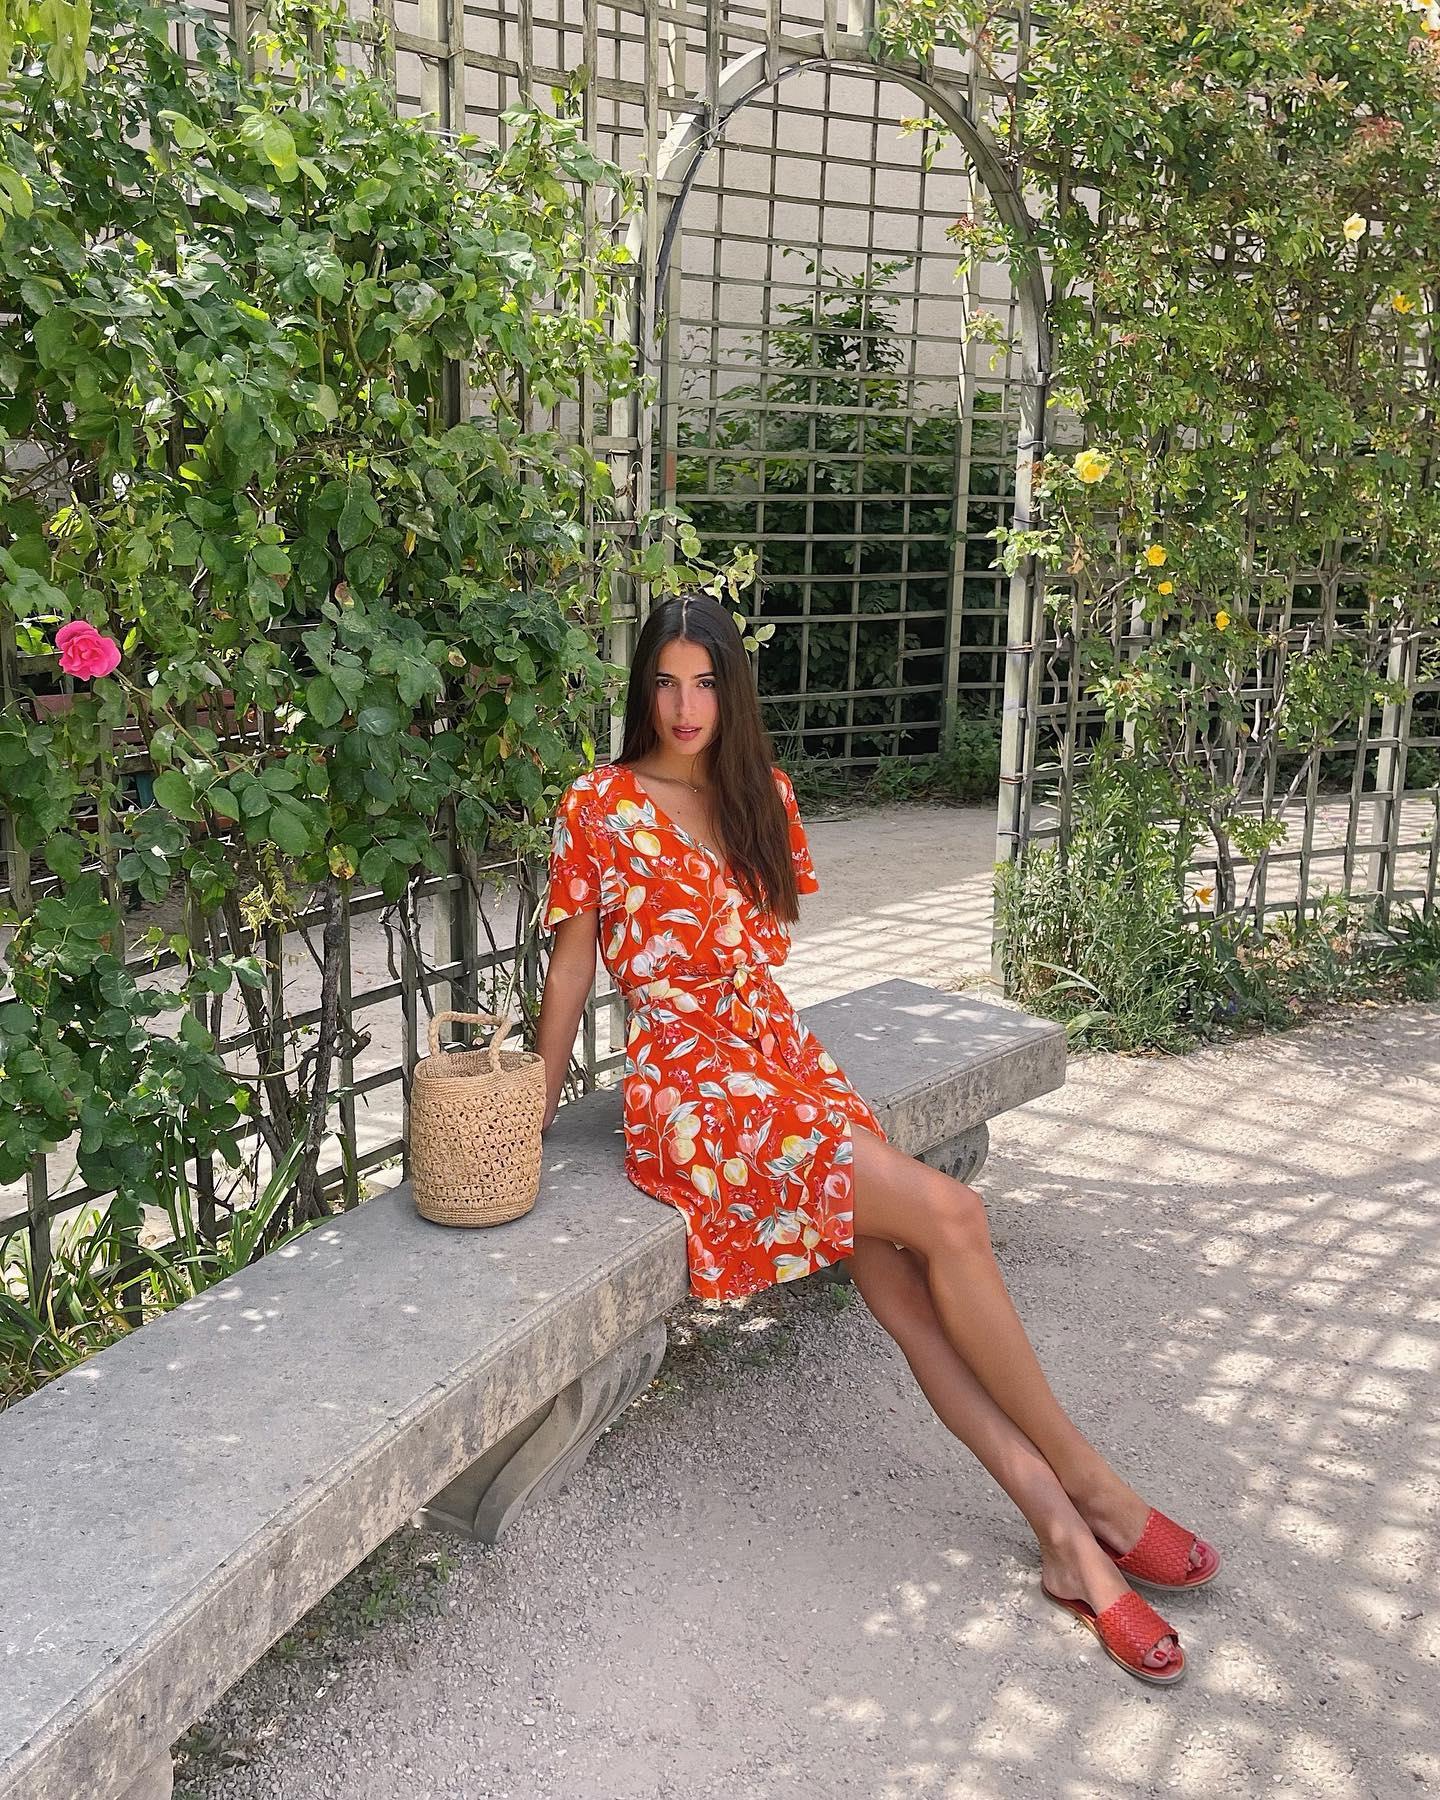 Mujeres francesas tendencias verano sandalias rojas